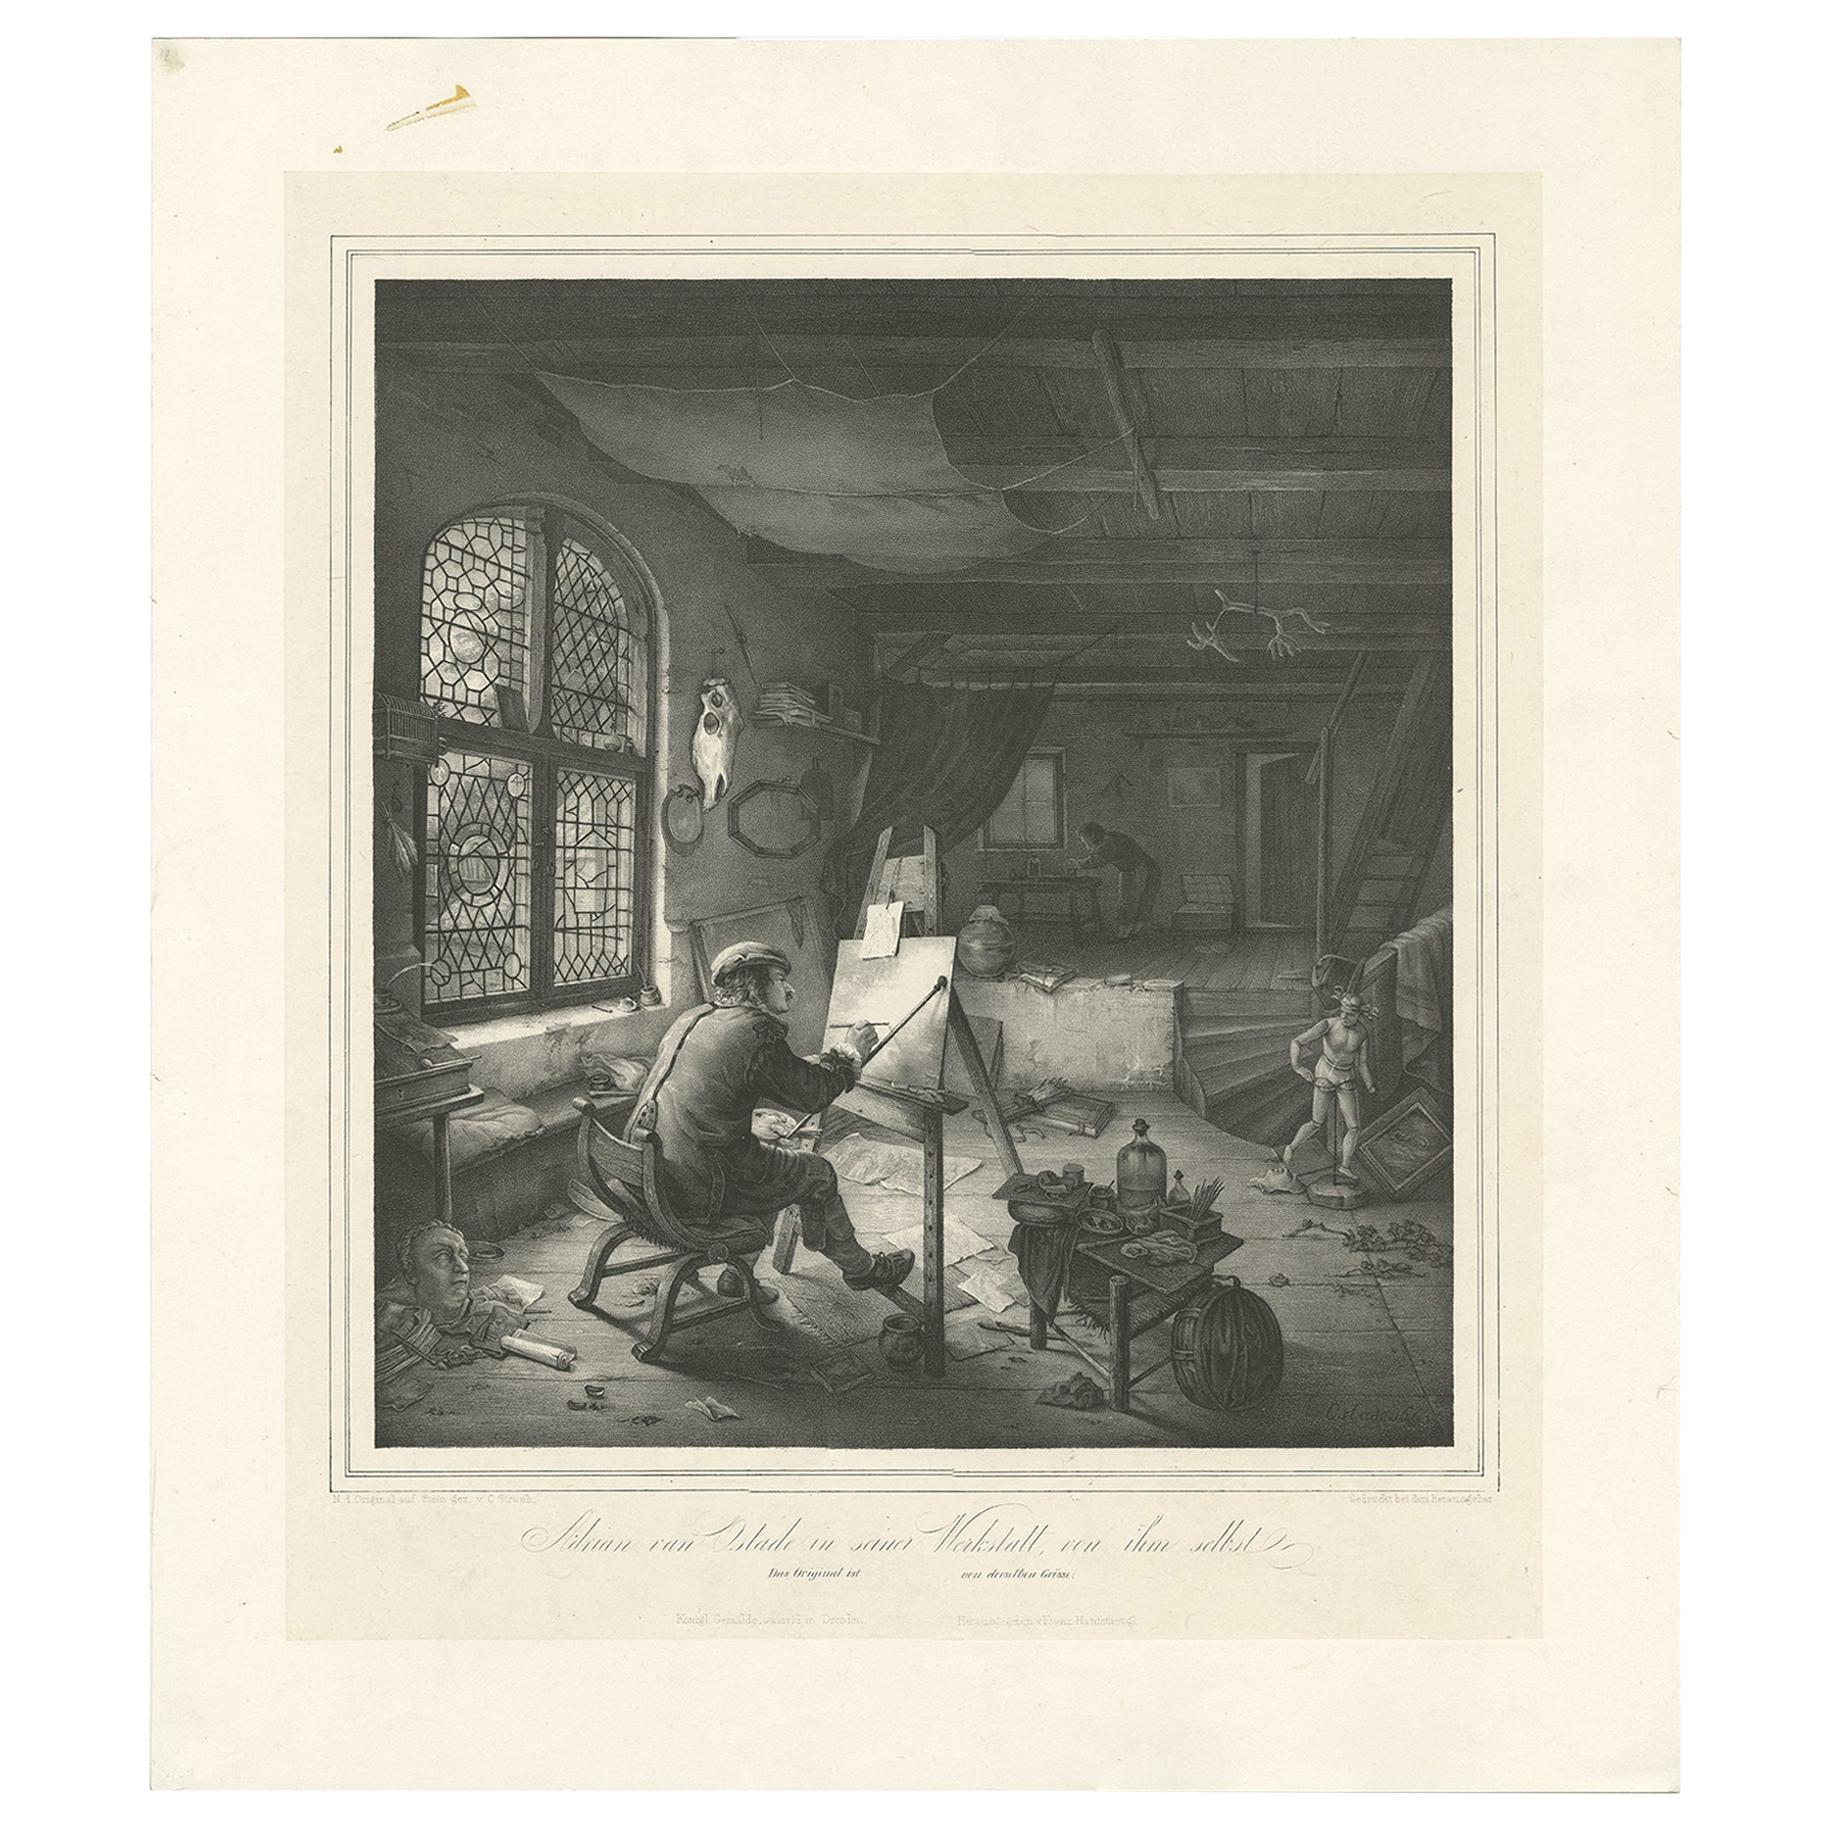 Antique print titled 'Adrian van Ostade in seiner Werkstatt von ihm selbst'. Lithograph, on chine collé, of the Dutch Golden Age painter Adriaen van Ostade in his workshop. Published circa 1840.